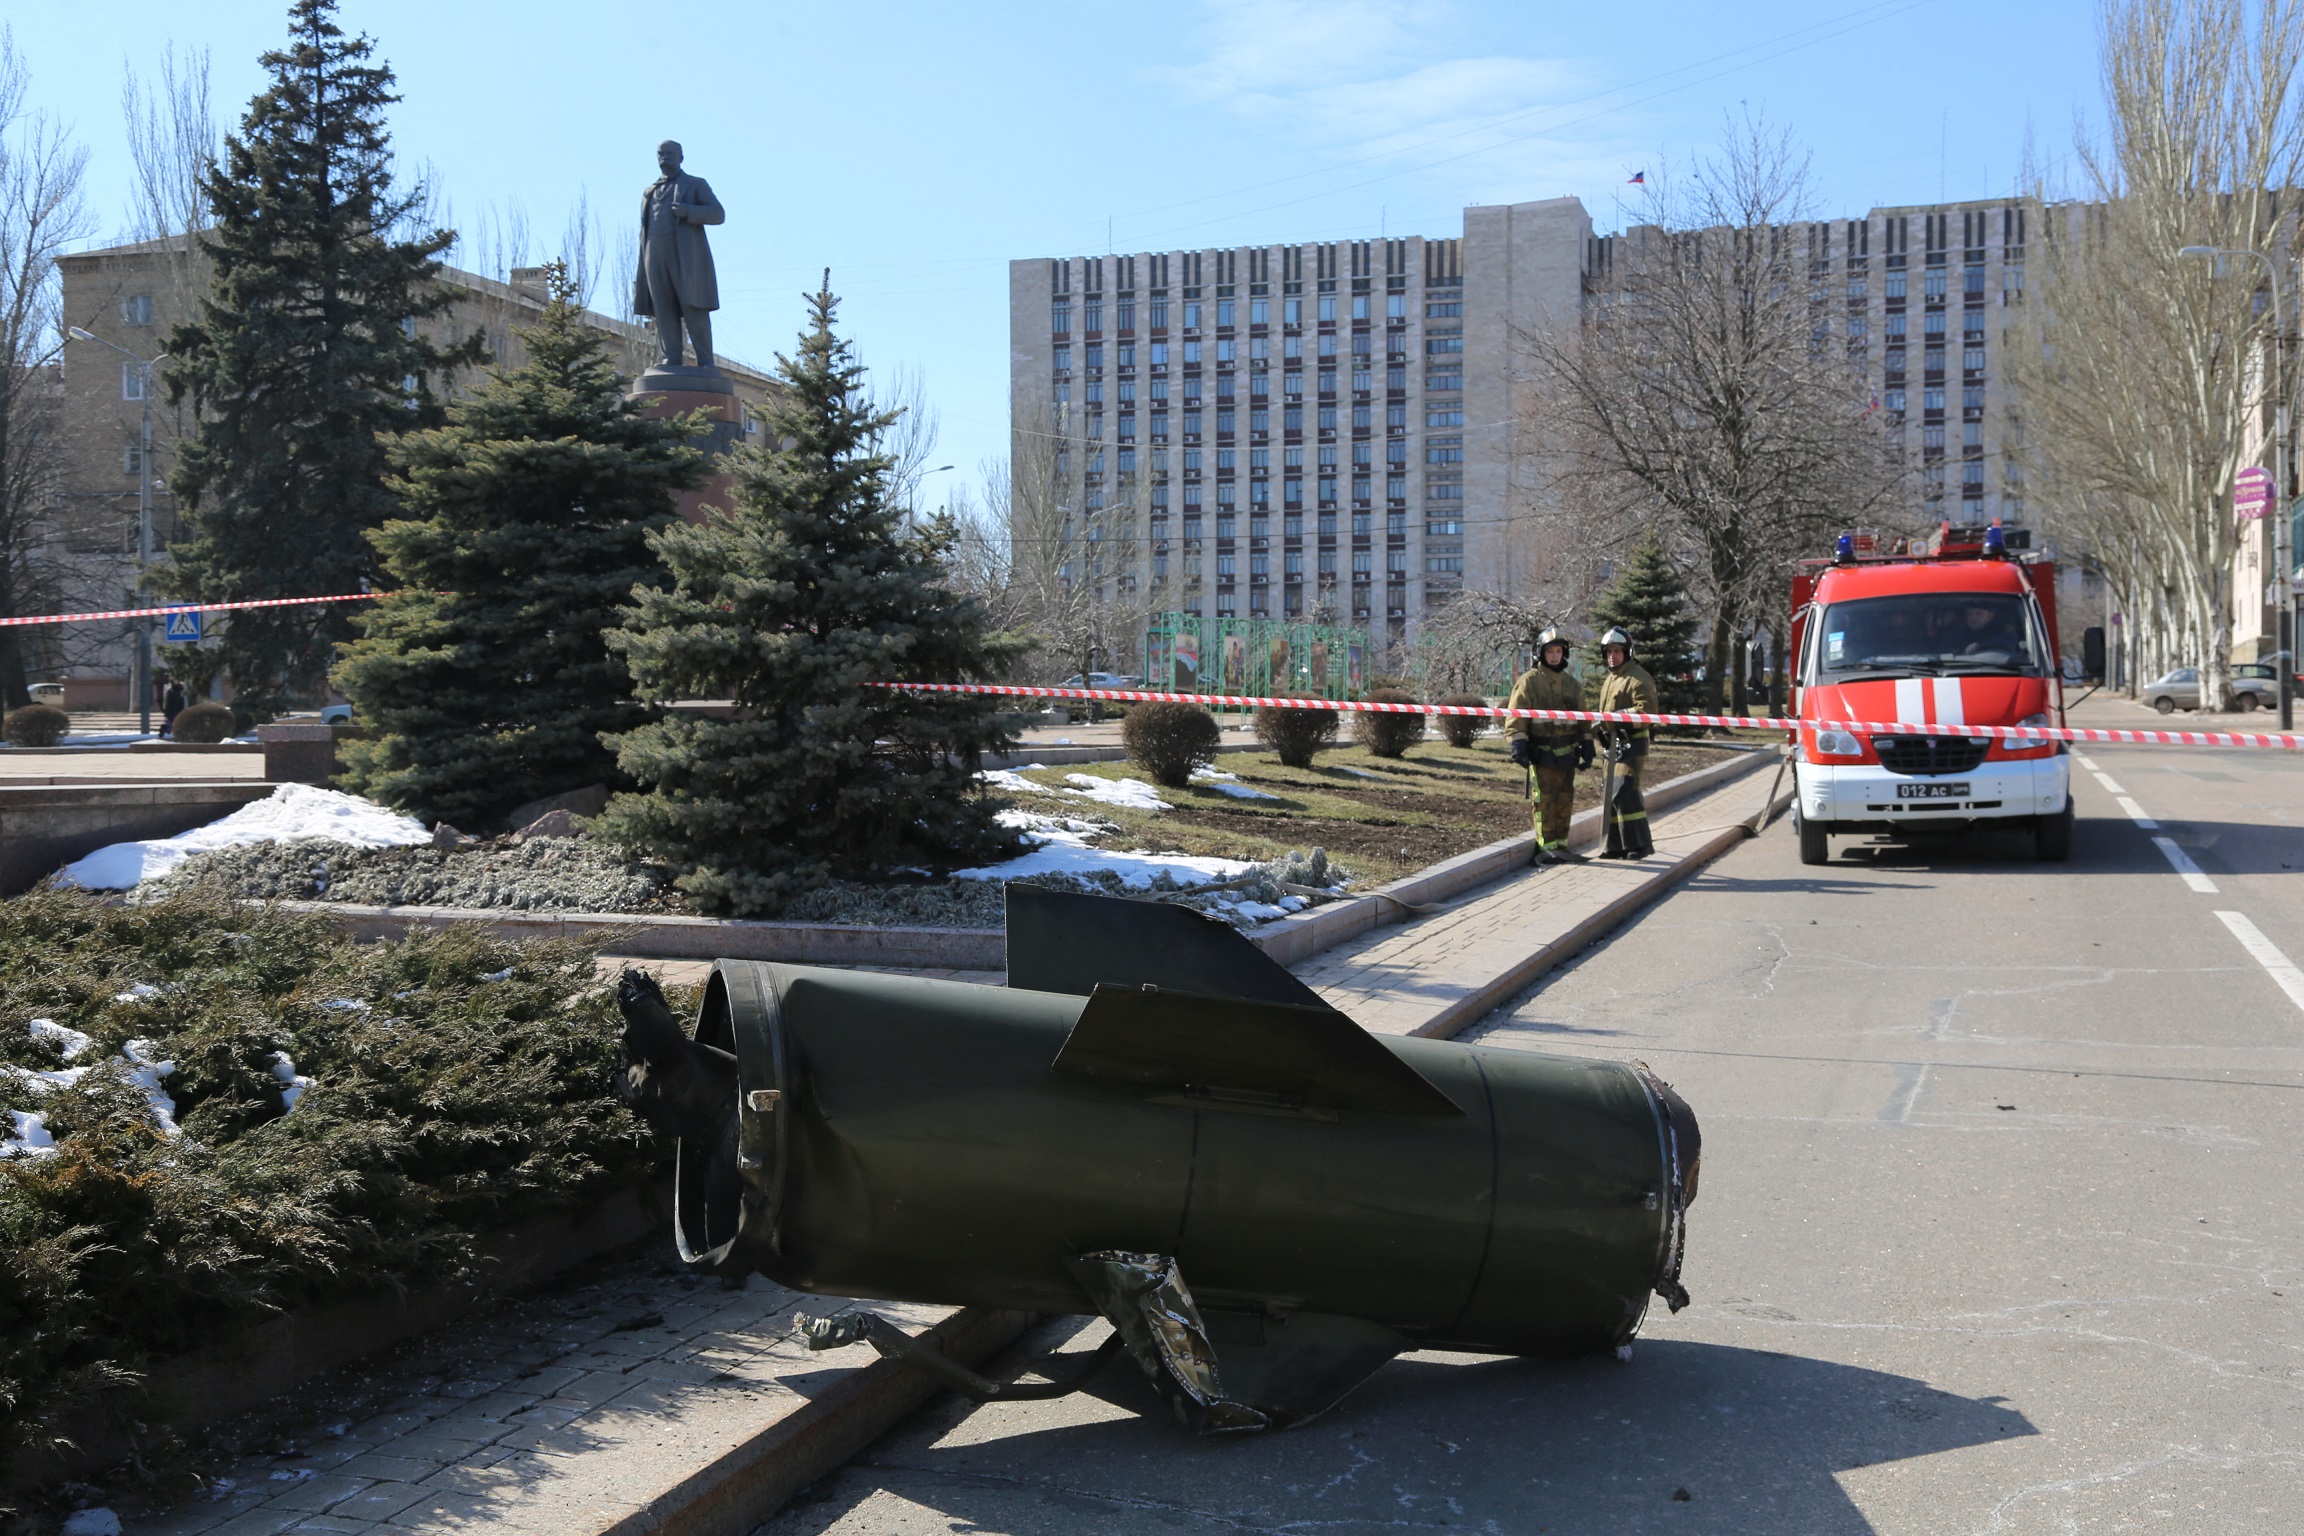 Moszkva azzal vádolja Kijevet, hogy ballisztikus rakétával ölt civileket Donyeckben